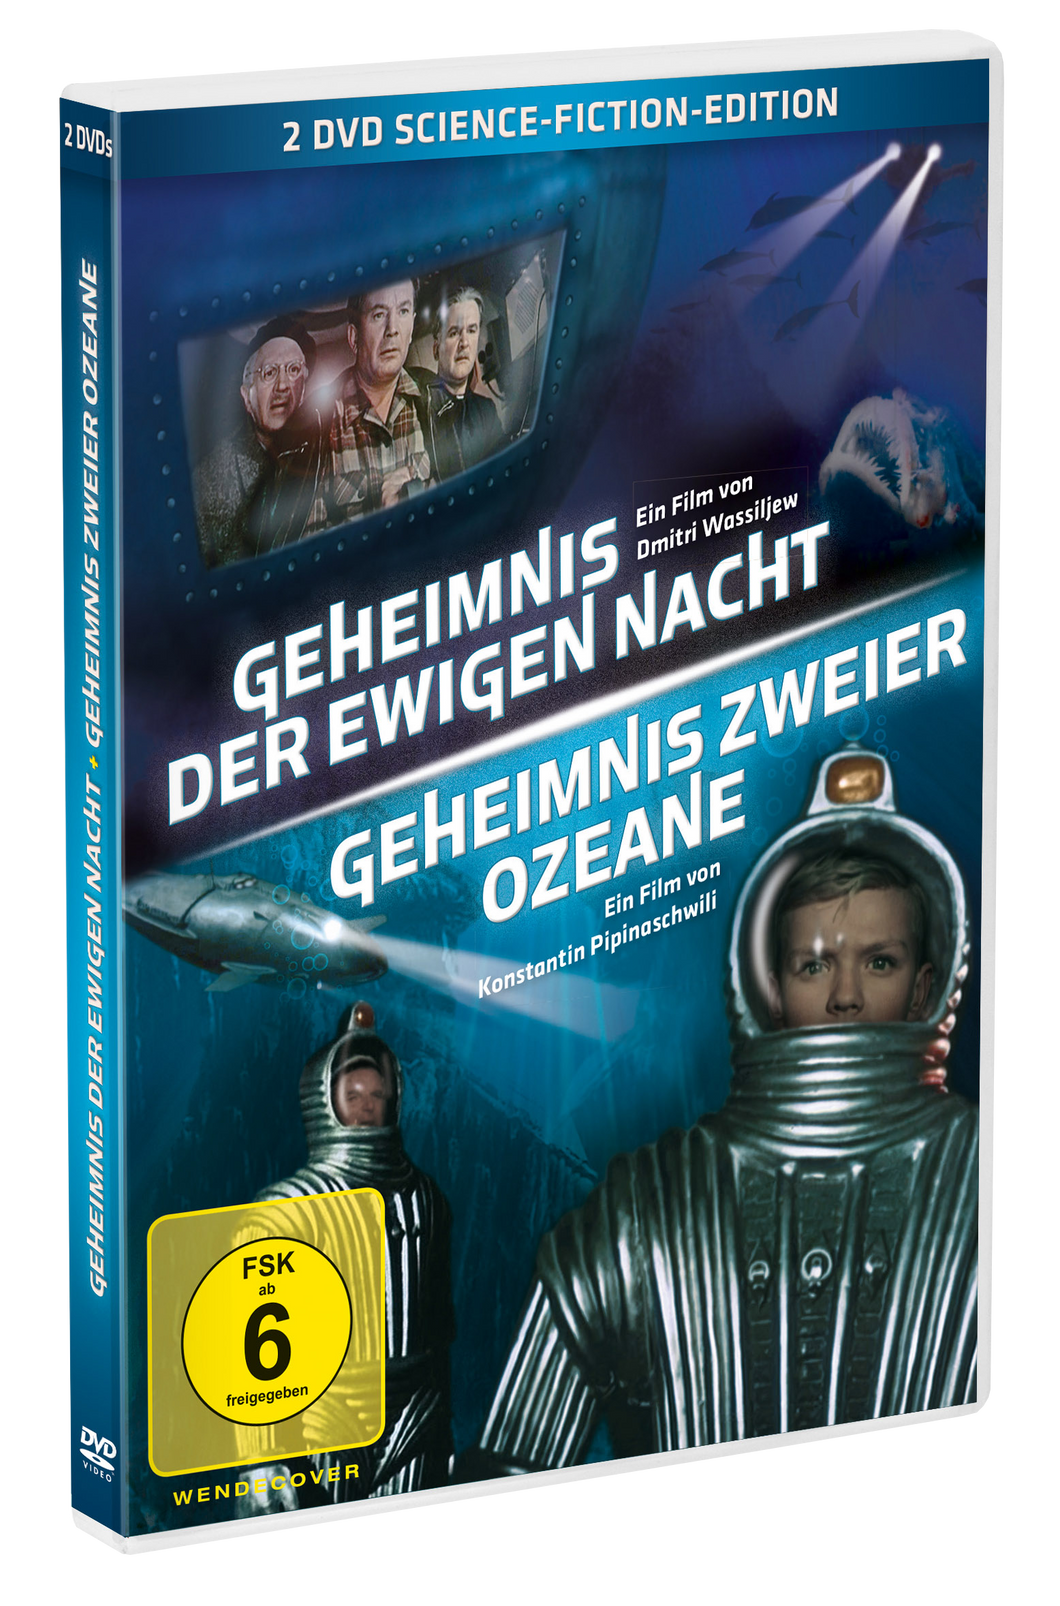 Geheimnis der ewigen Nacht / Geheimnis zweier Ozeane - Science-Fiction Doppel Edition